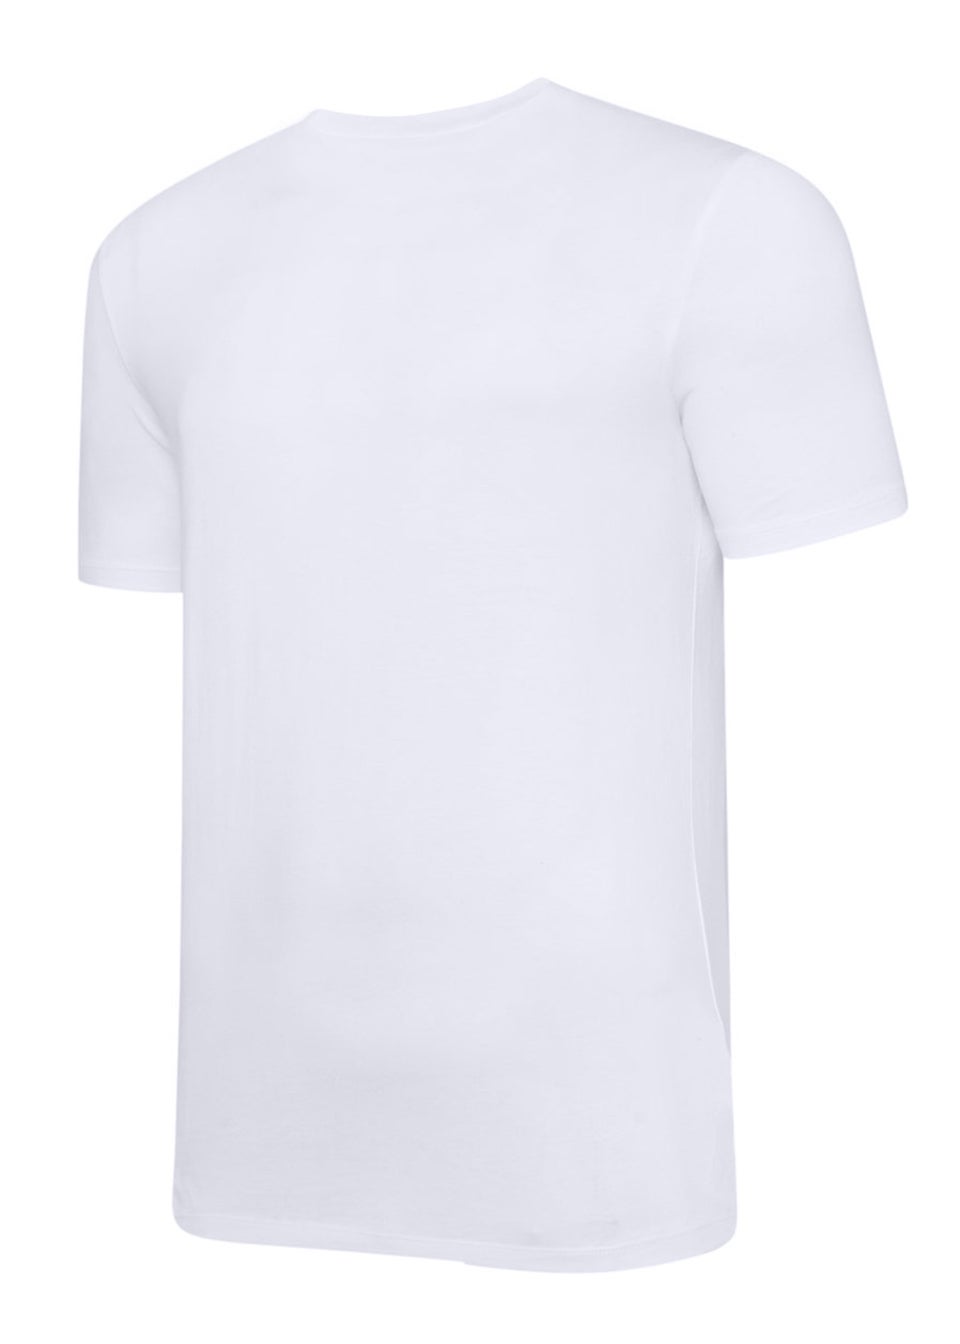 Umbro Kids White/Black Club Leisure T-Shirt (7-10yrs)